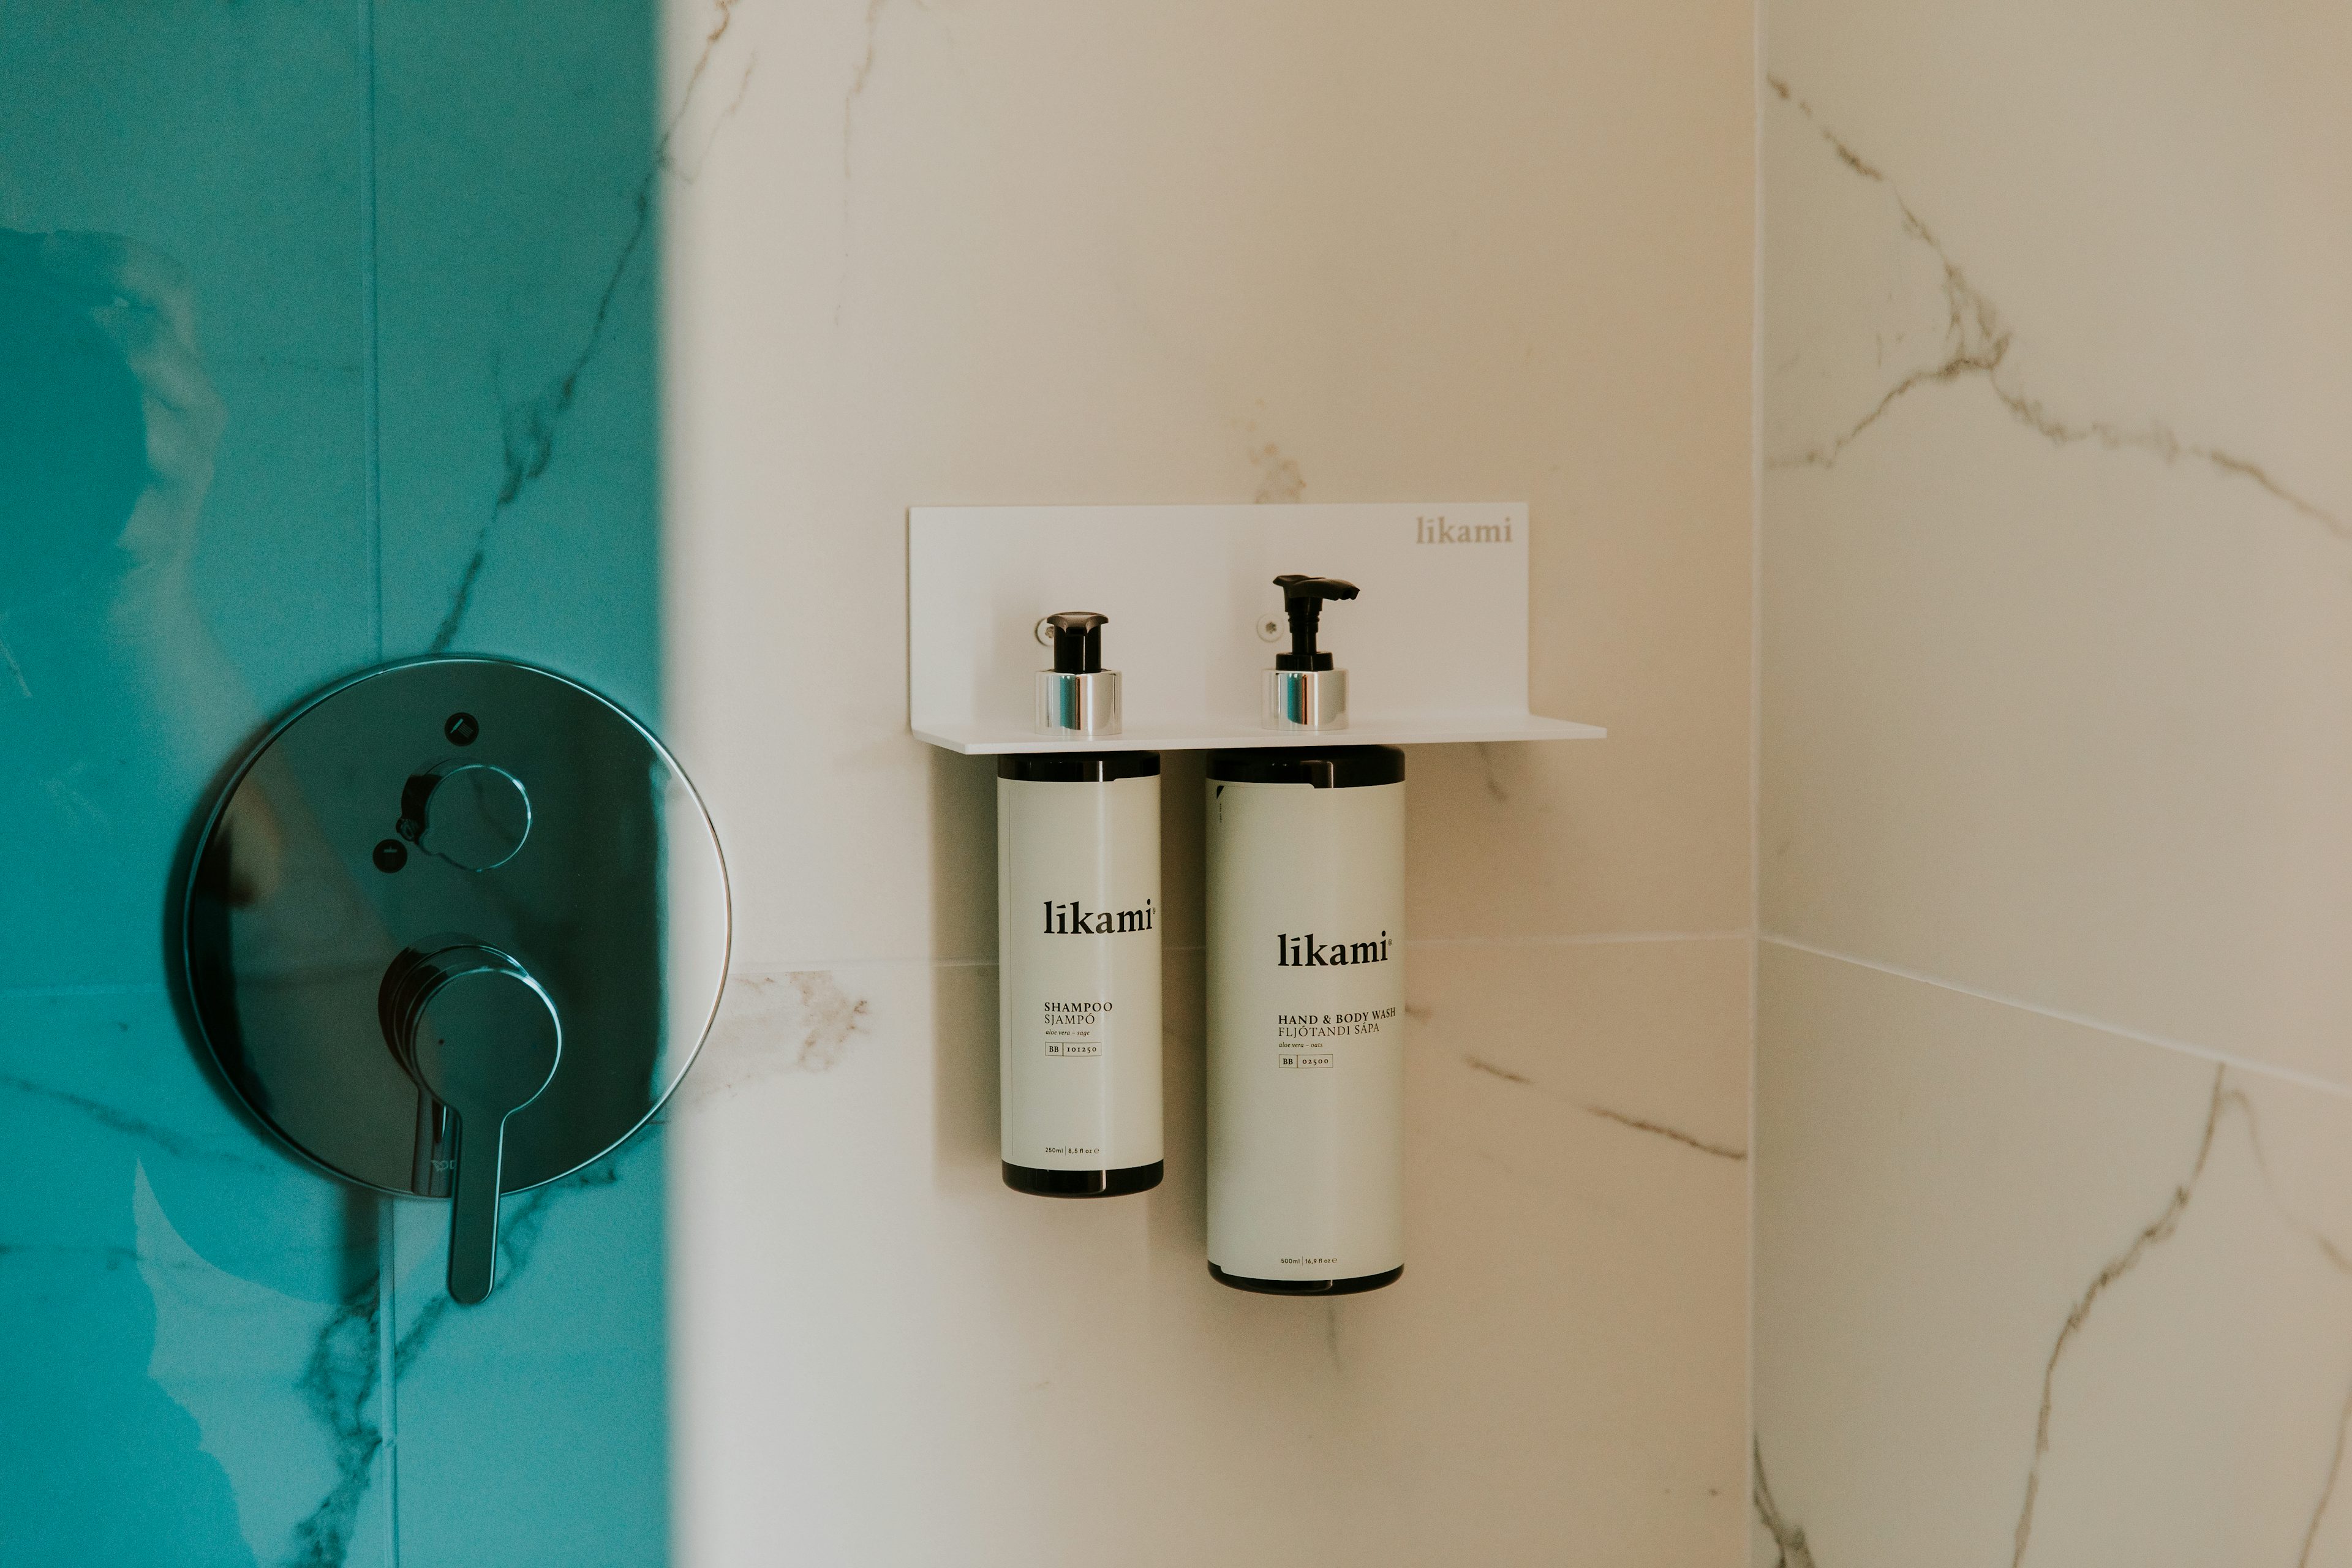 De beste natuurlijke eco-luxe producten in de badkamer...